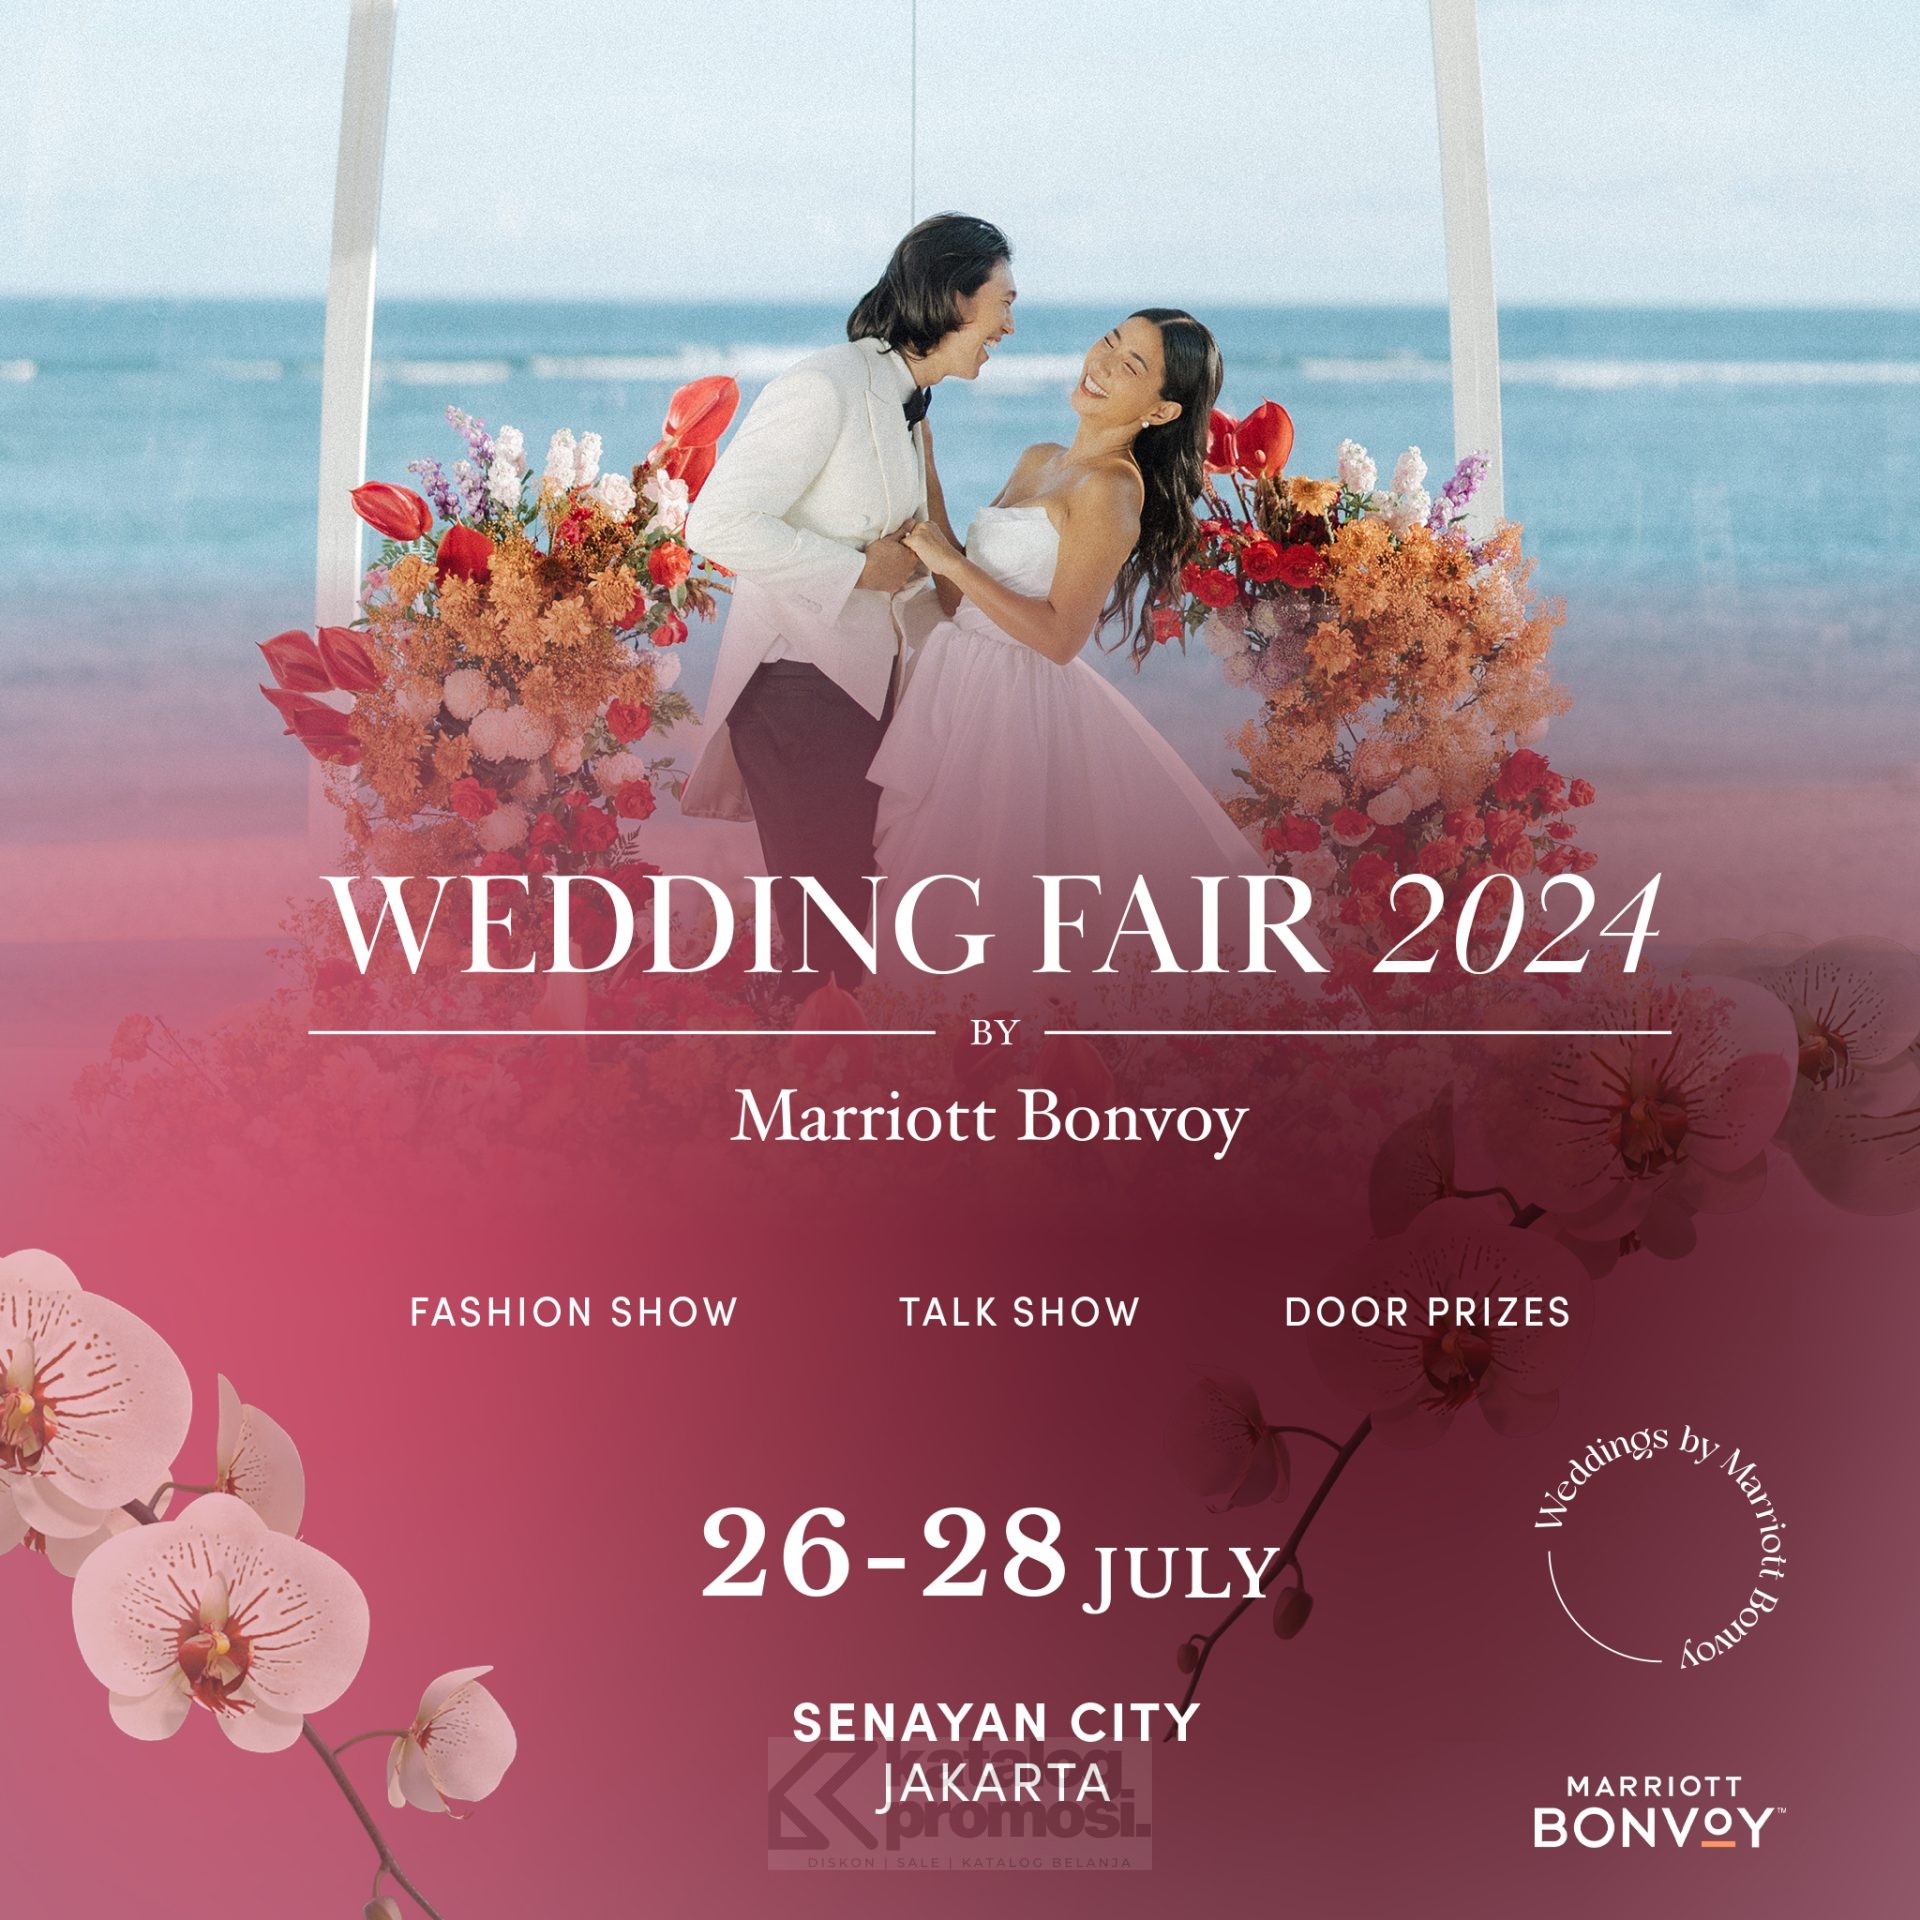 Wedding Fair 2024 by Marriott Bonvoy di Senayan City mulai tanggal 26-28 Juli 2024